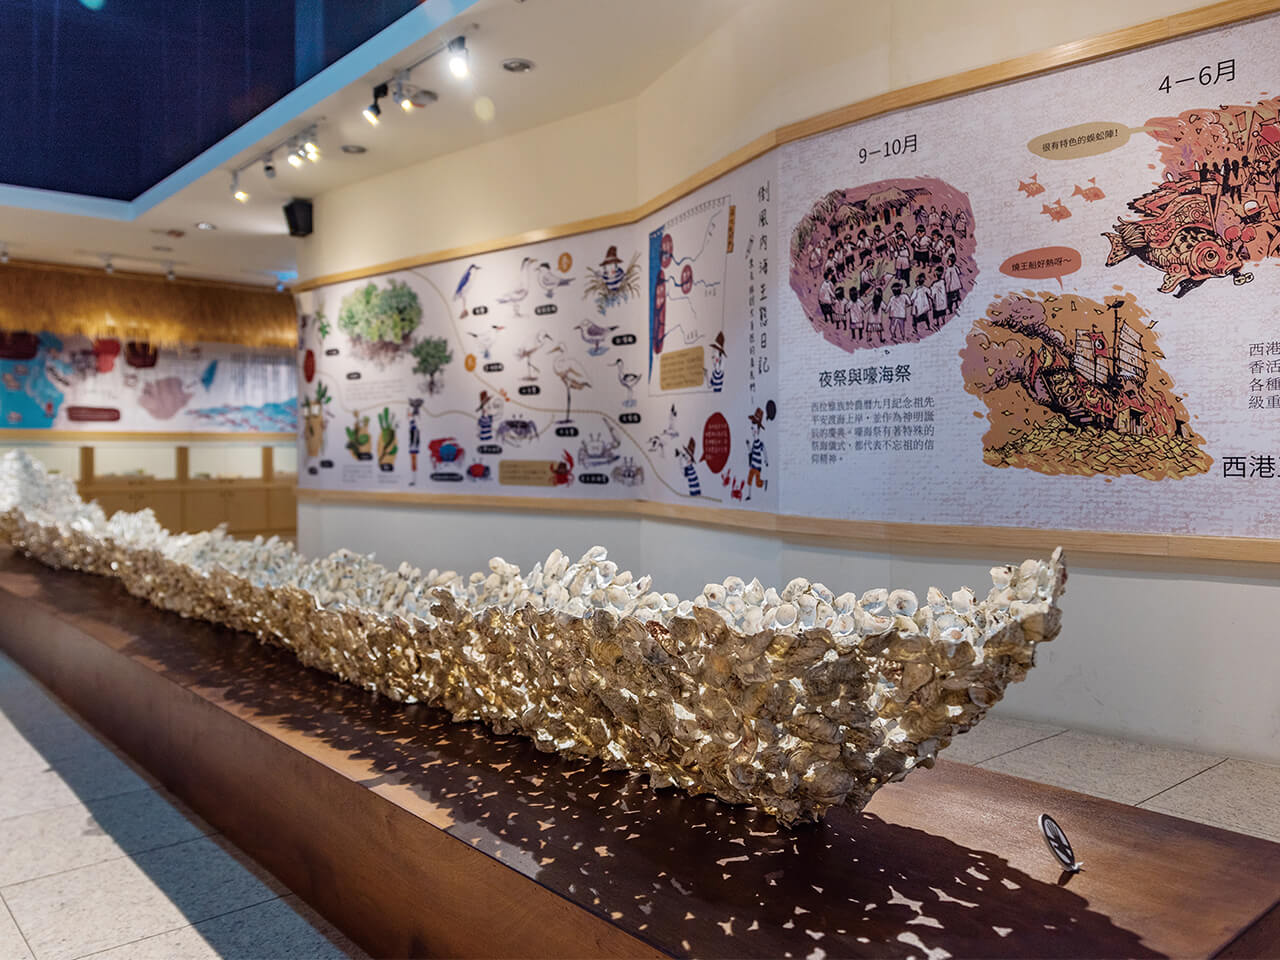  Larga canoa hecha con conchas de ostras 